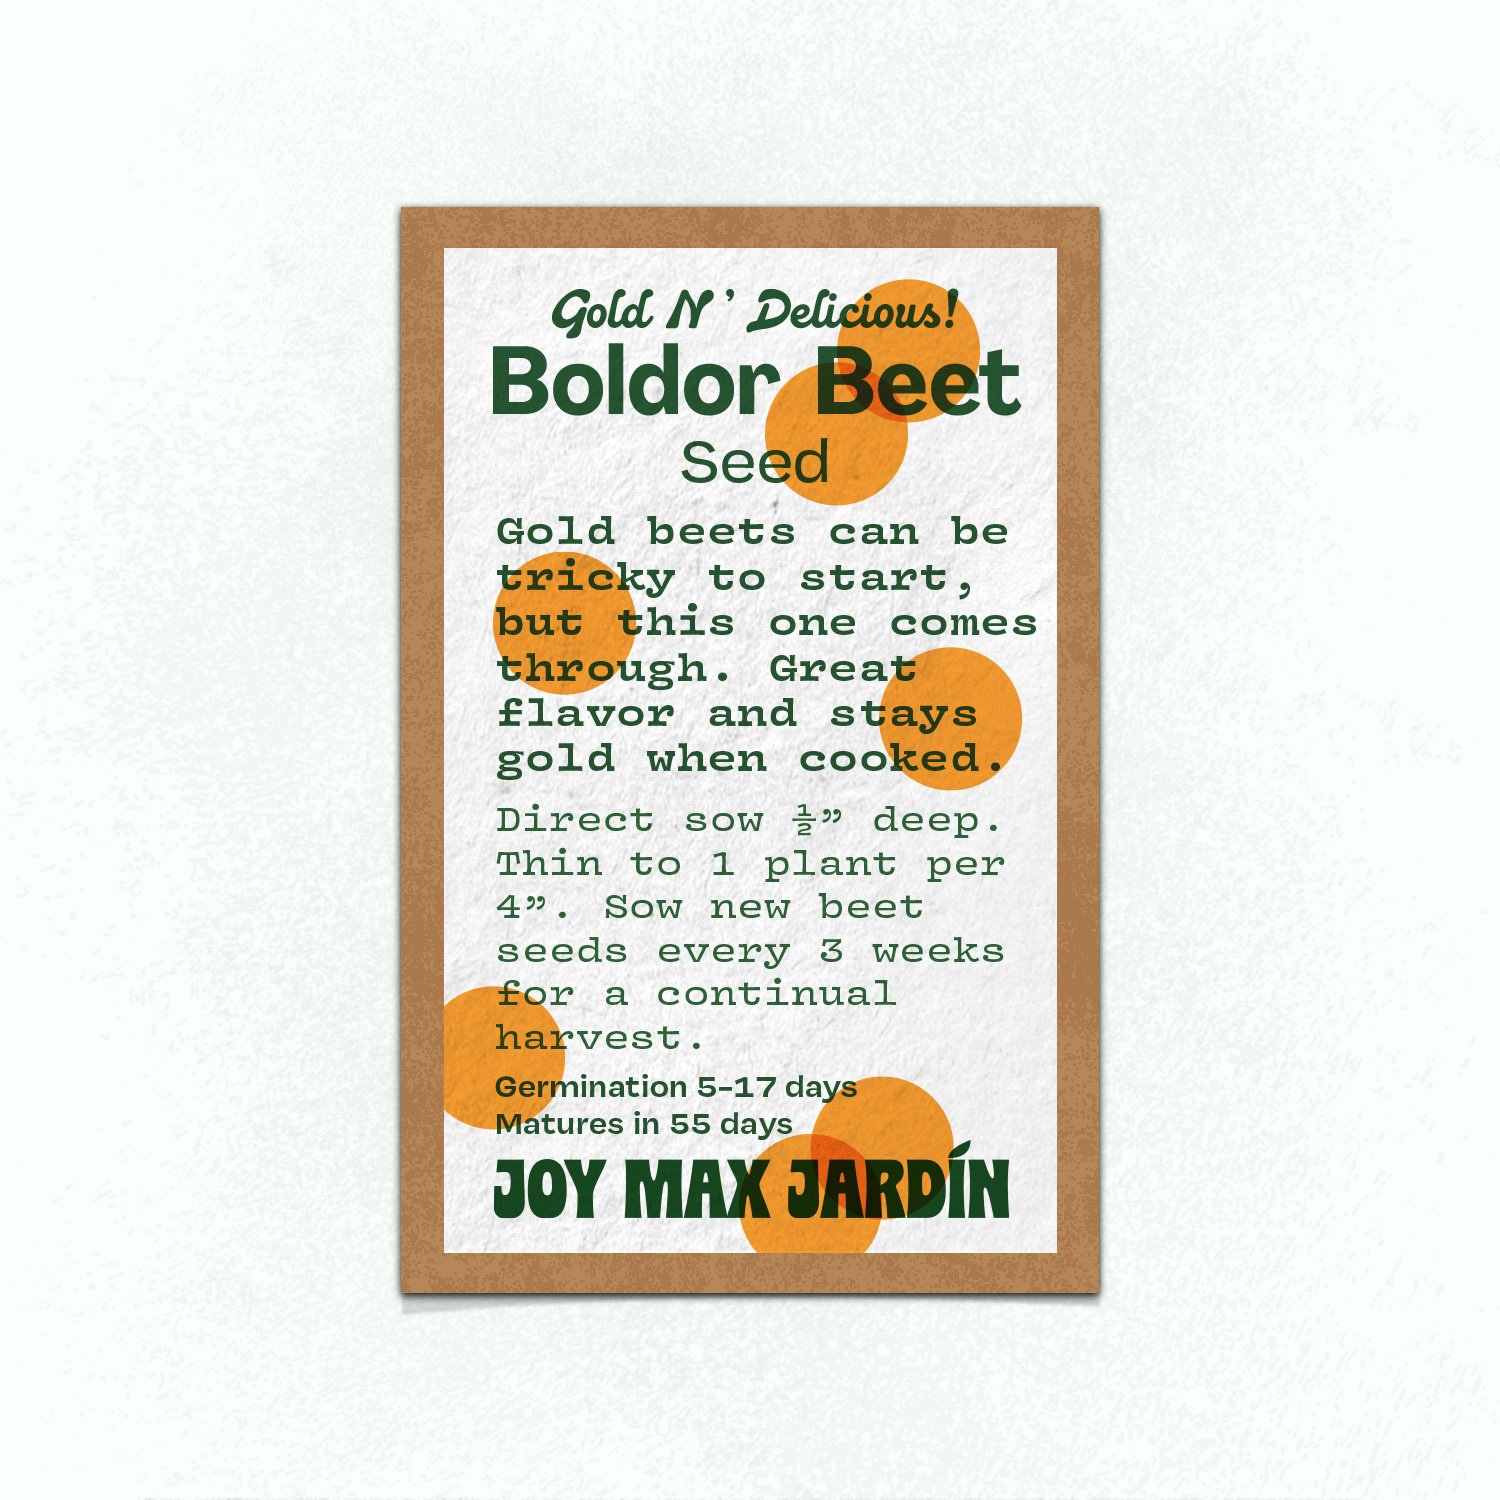 Joy Max Jardin Boldor Beet Seed.jpg